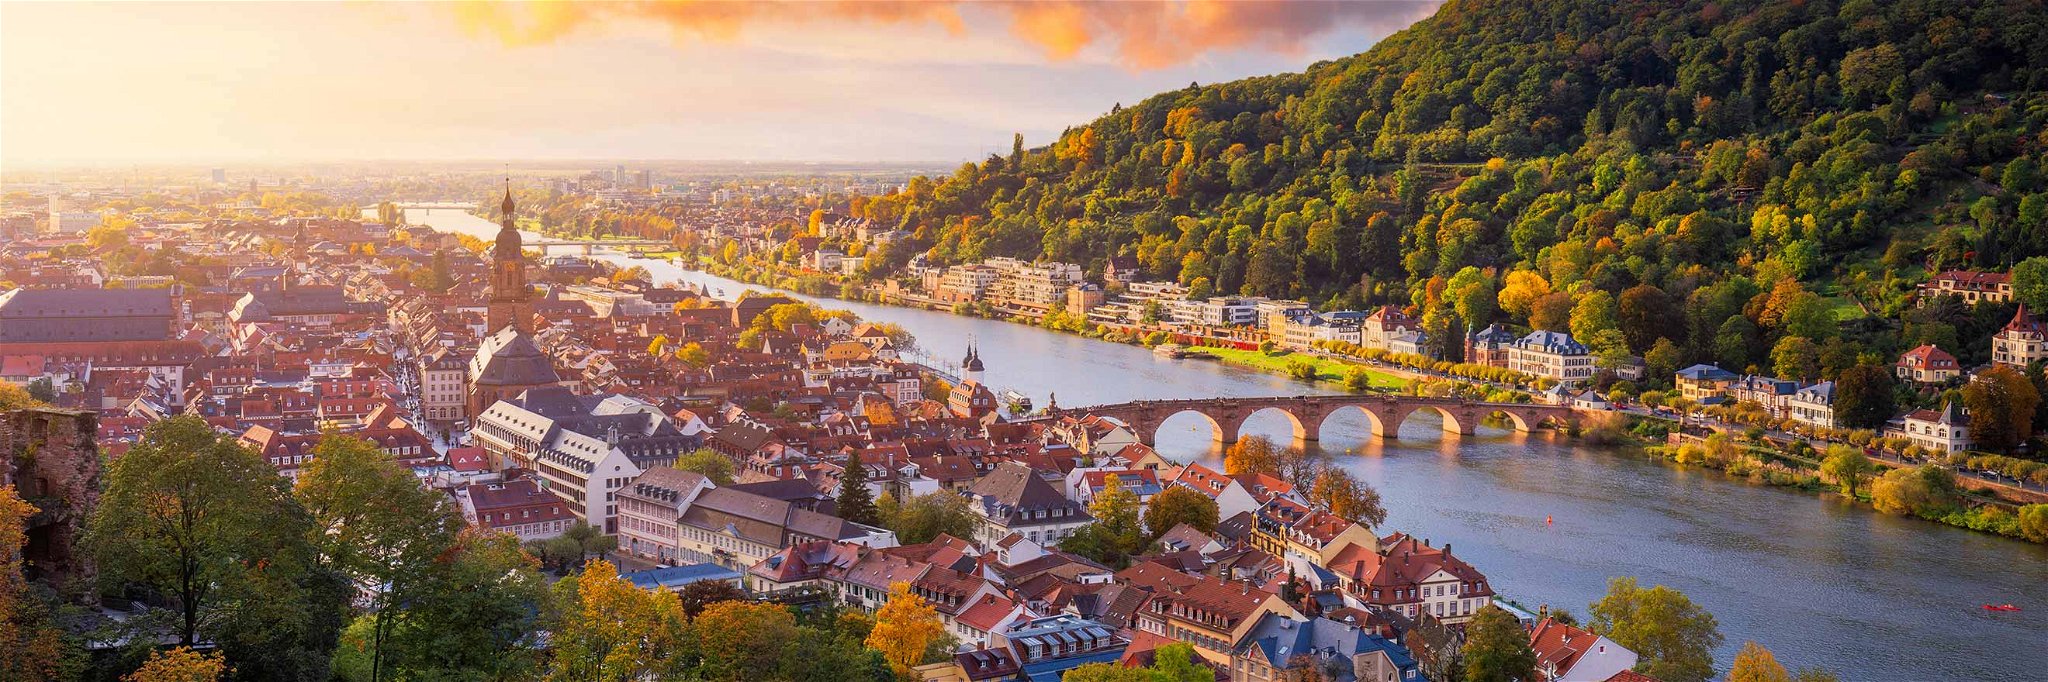 Heidelberg ist nicht nur schön, sondern bietet auch allerhand kulinarische Highlights.&nbsp;